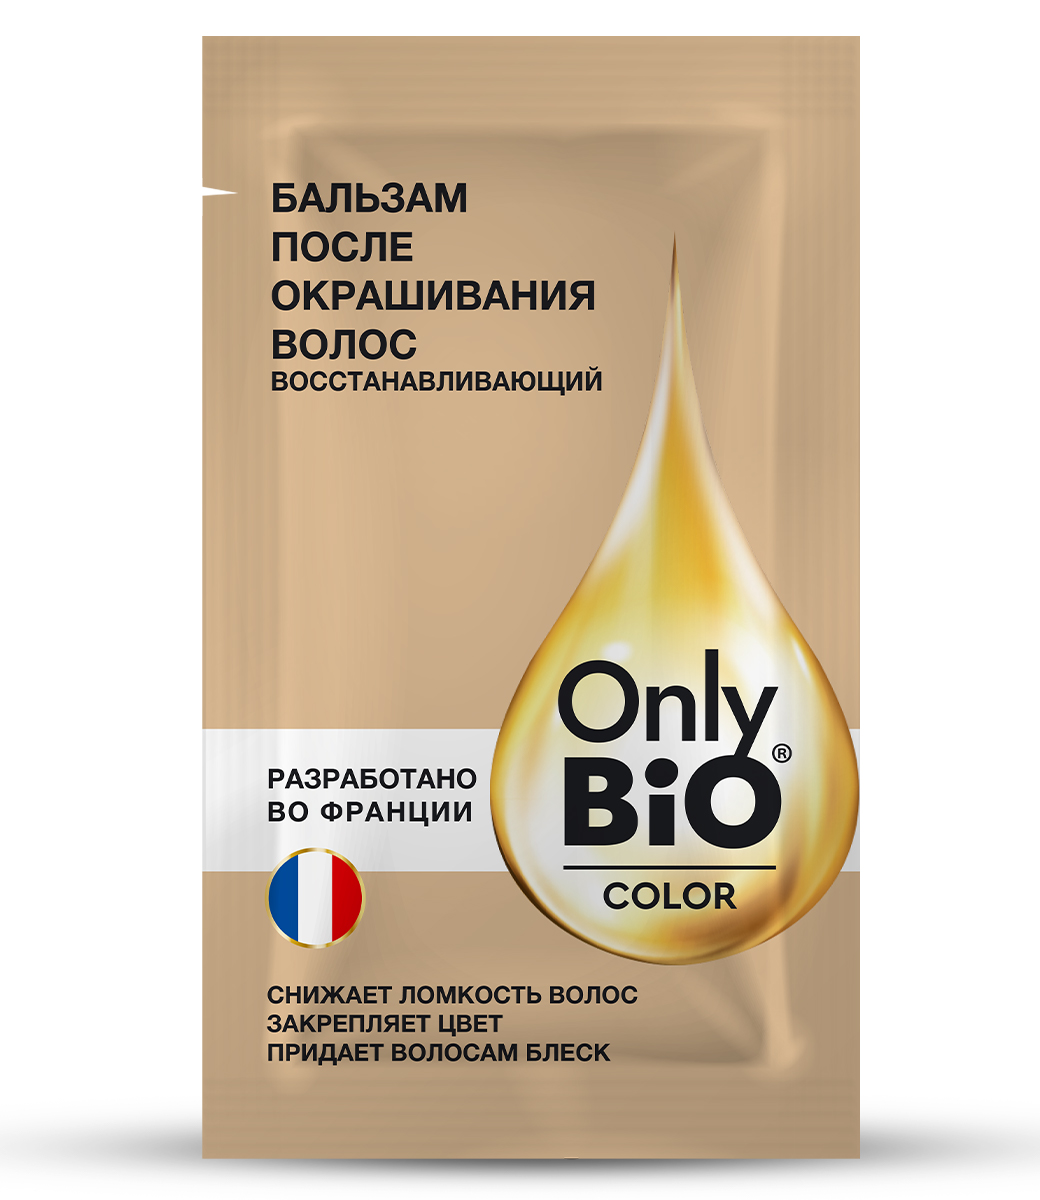 картинка Only Bio Стойкая крем-краска для волос Тон 5.46 Медно-рыжий